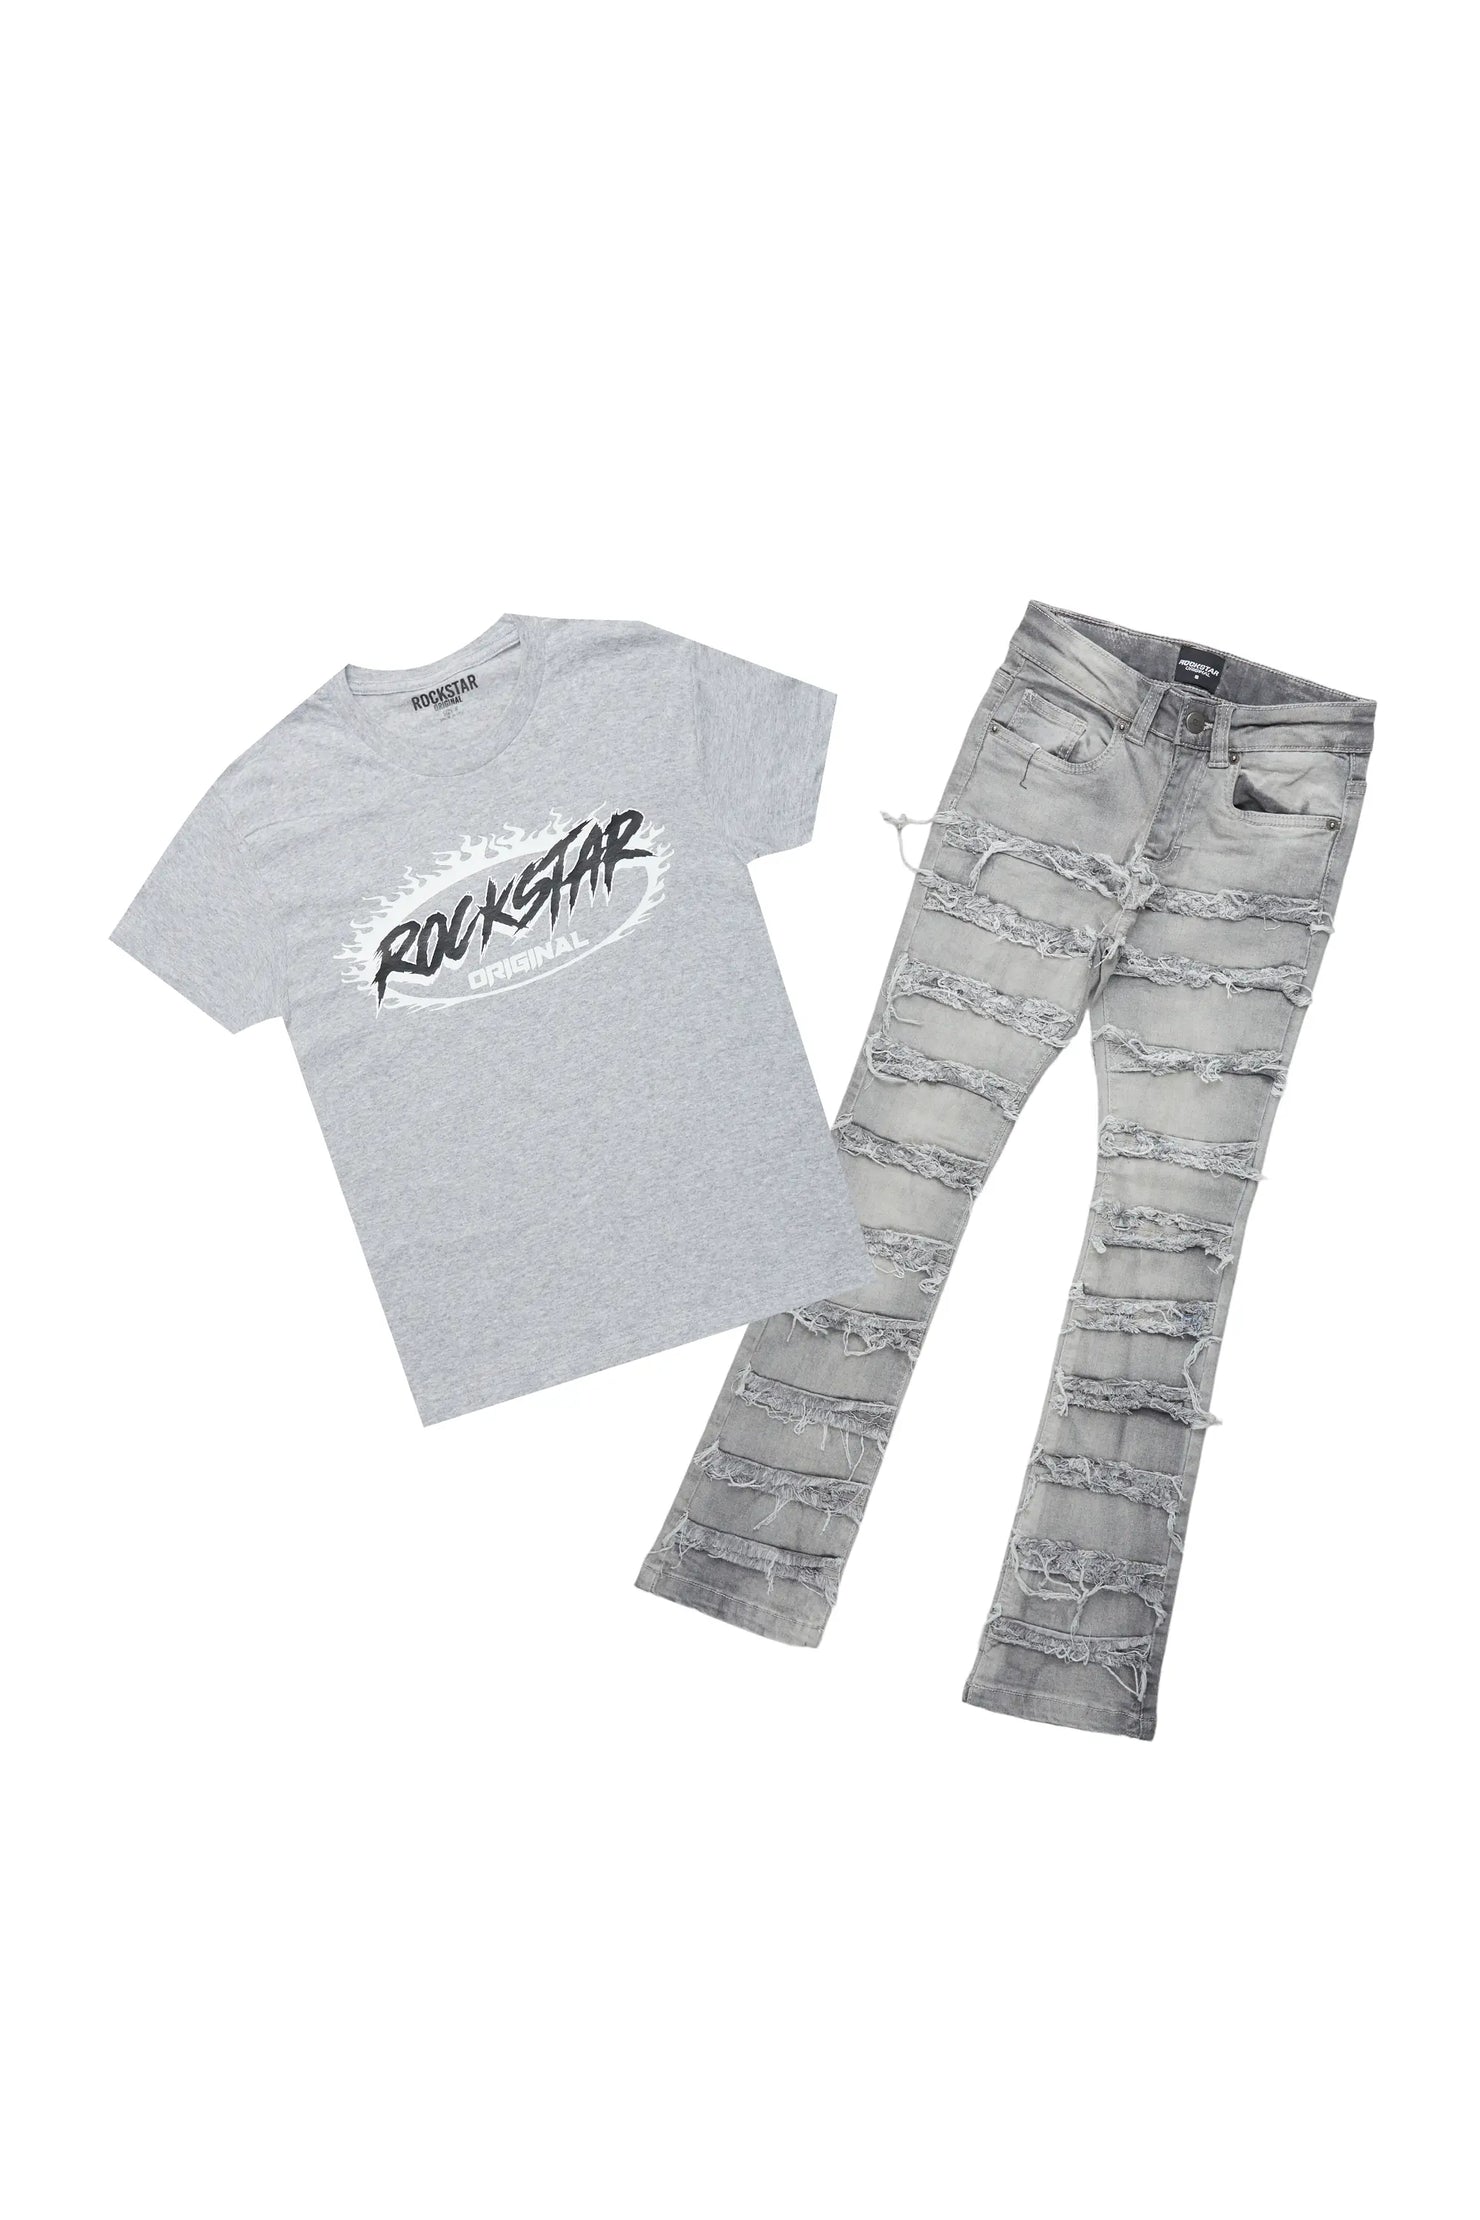 Boys Ochoa Grey T-Shirt/Skinny Stack Flare Jean Set